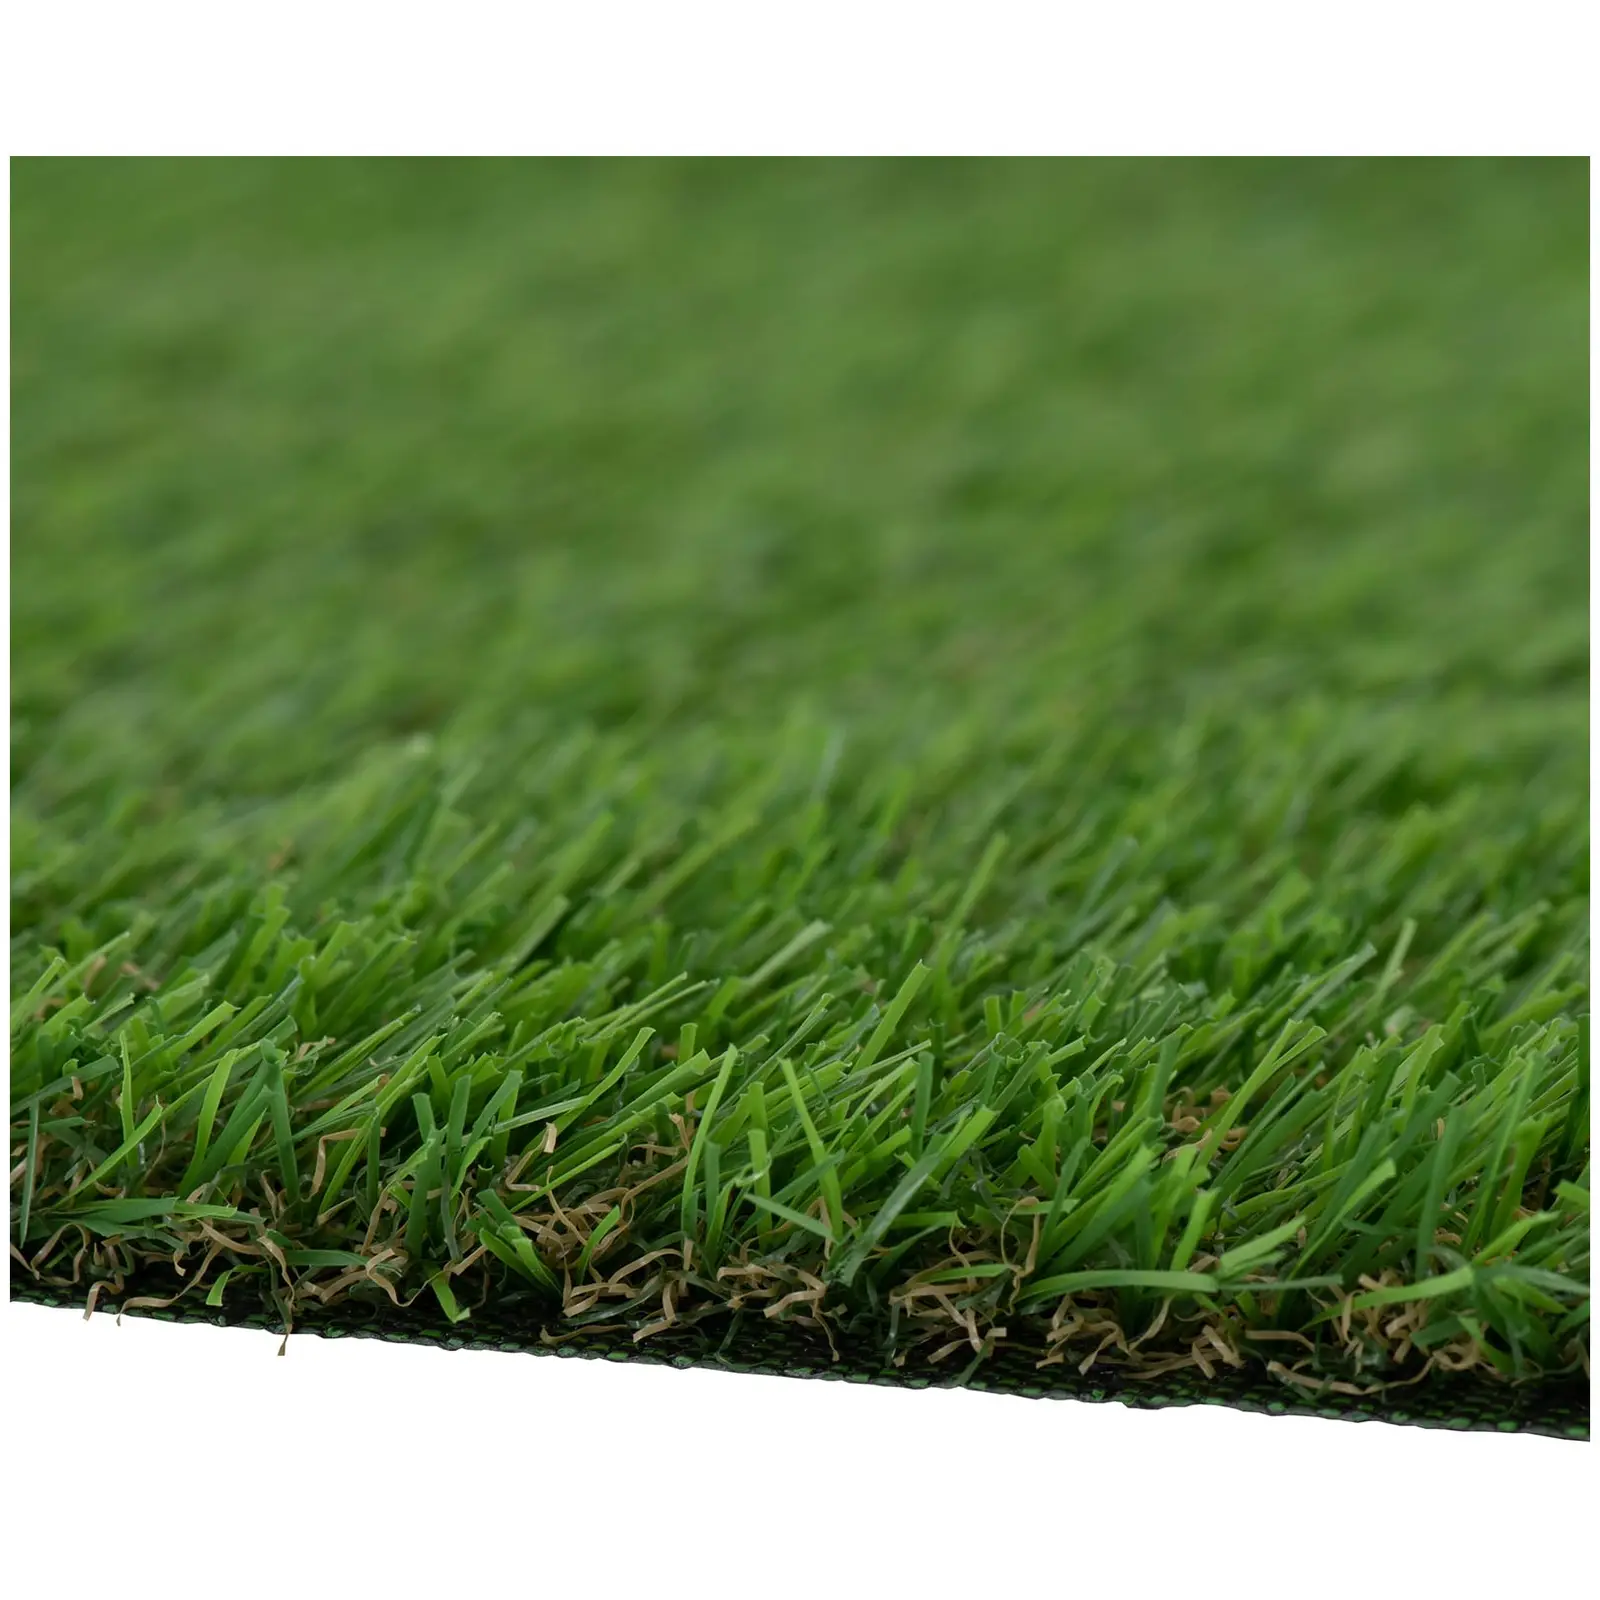 Umelý trávnik - 1023 x 200 cm - výška: 20 mm - hustota stehov: 13/10 cm - odolný proti UV žiareniu